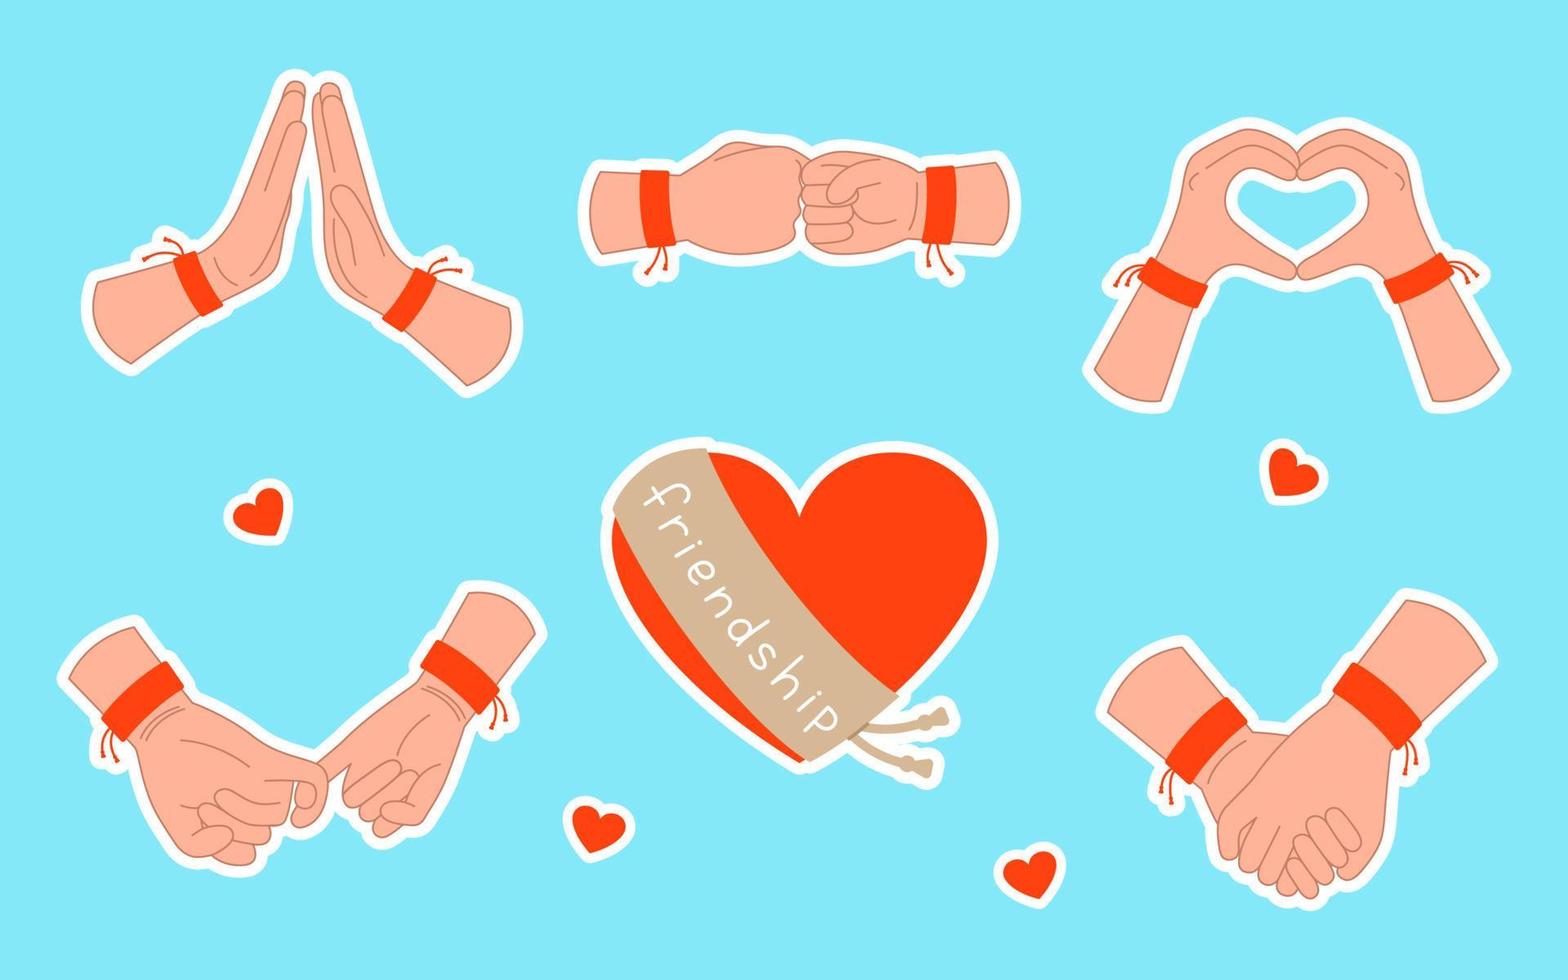 conjunto de adesivos com poses de mãos humanas em pulseiras de amizade. ilustração em vetor dia internacional da amizade. gestos e coração com acidente vascular cerebral isolado no fundo azul